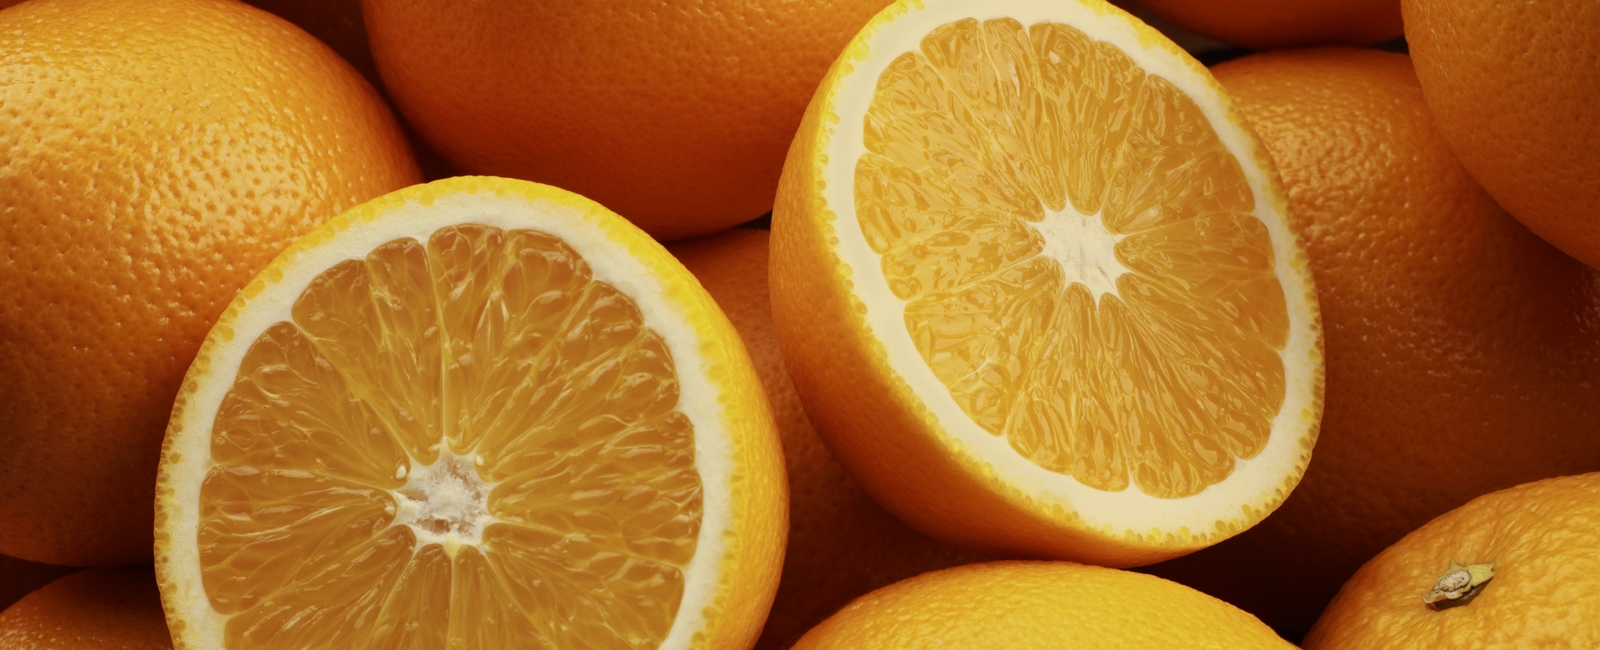 Preventing citrus peel splitting